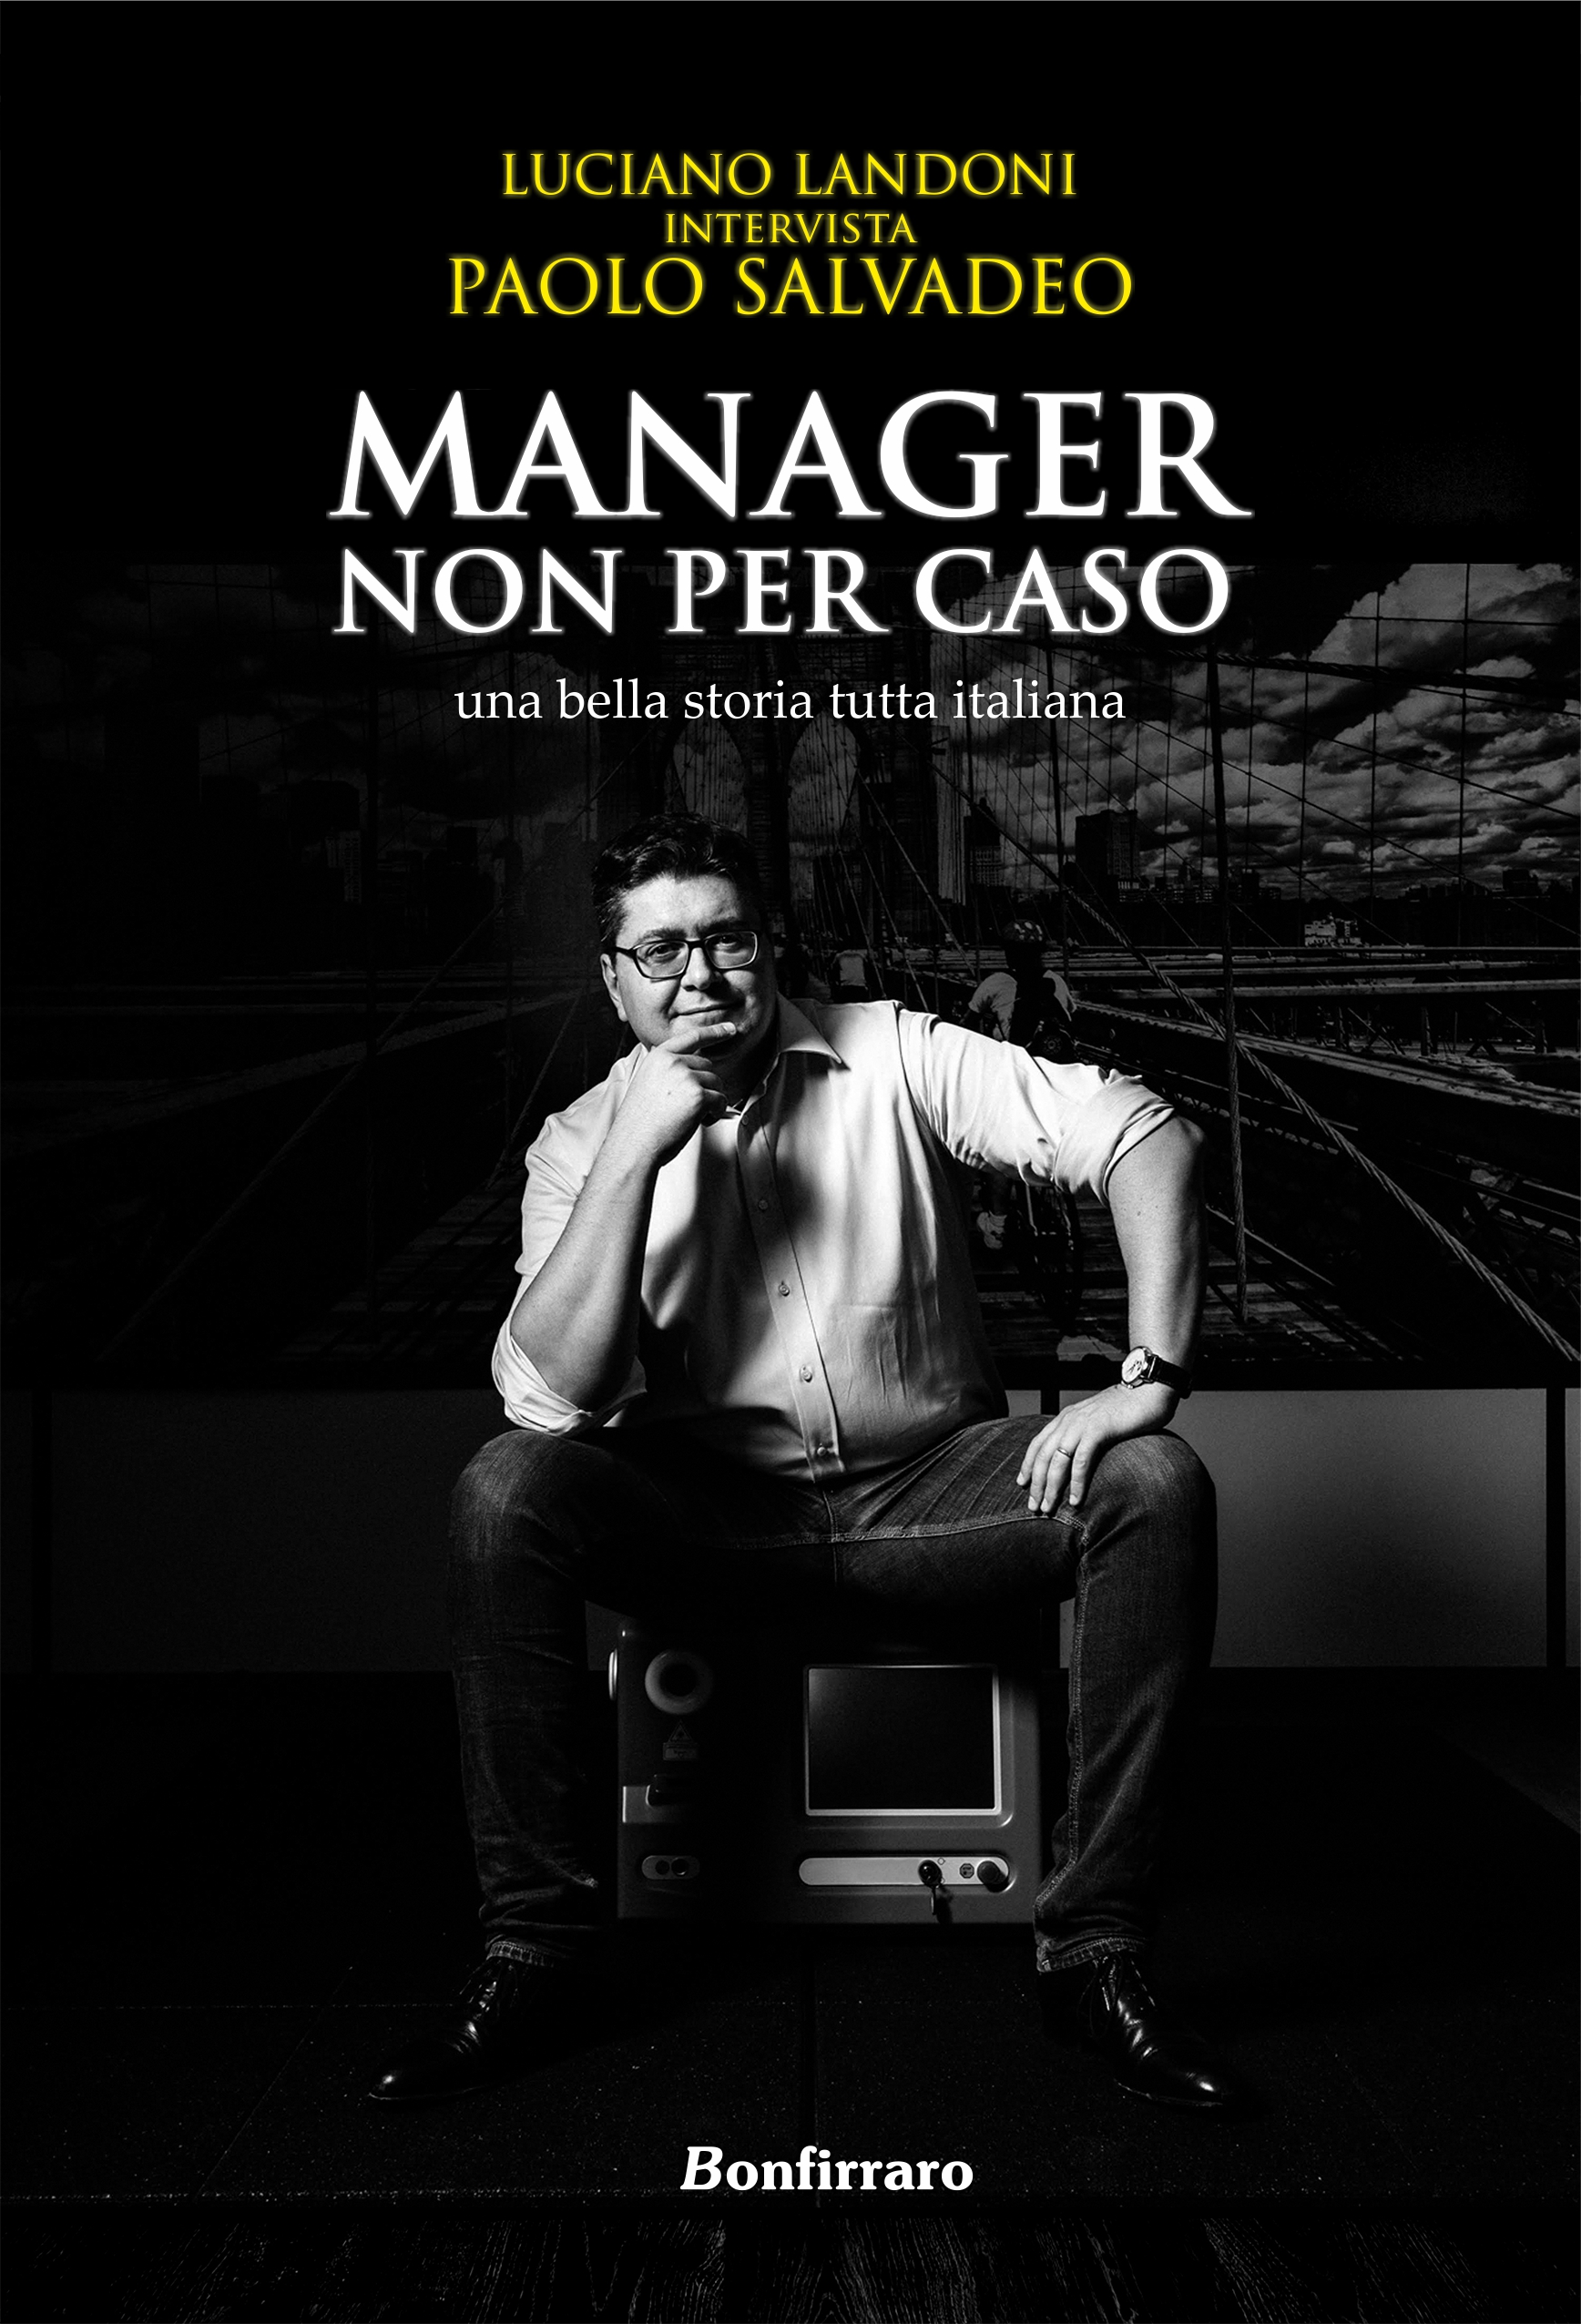 “MANAGER NON PER CASO una bella storia tutta italiana” l'intervista rivelazione di Luciano Landoni a Paolo Salvadeo